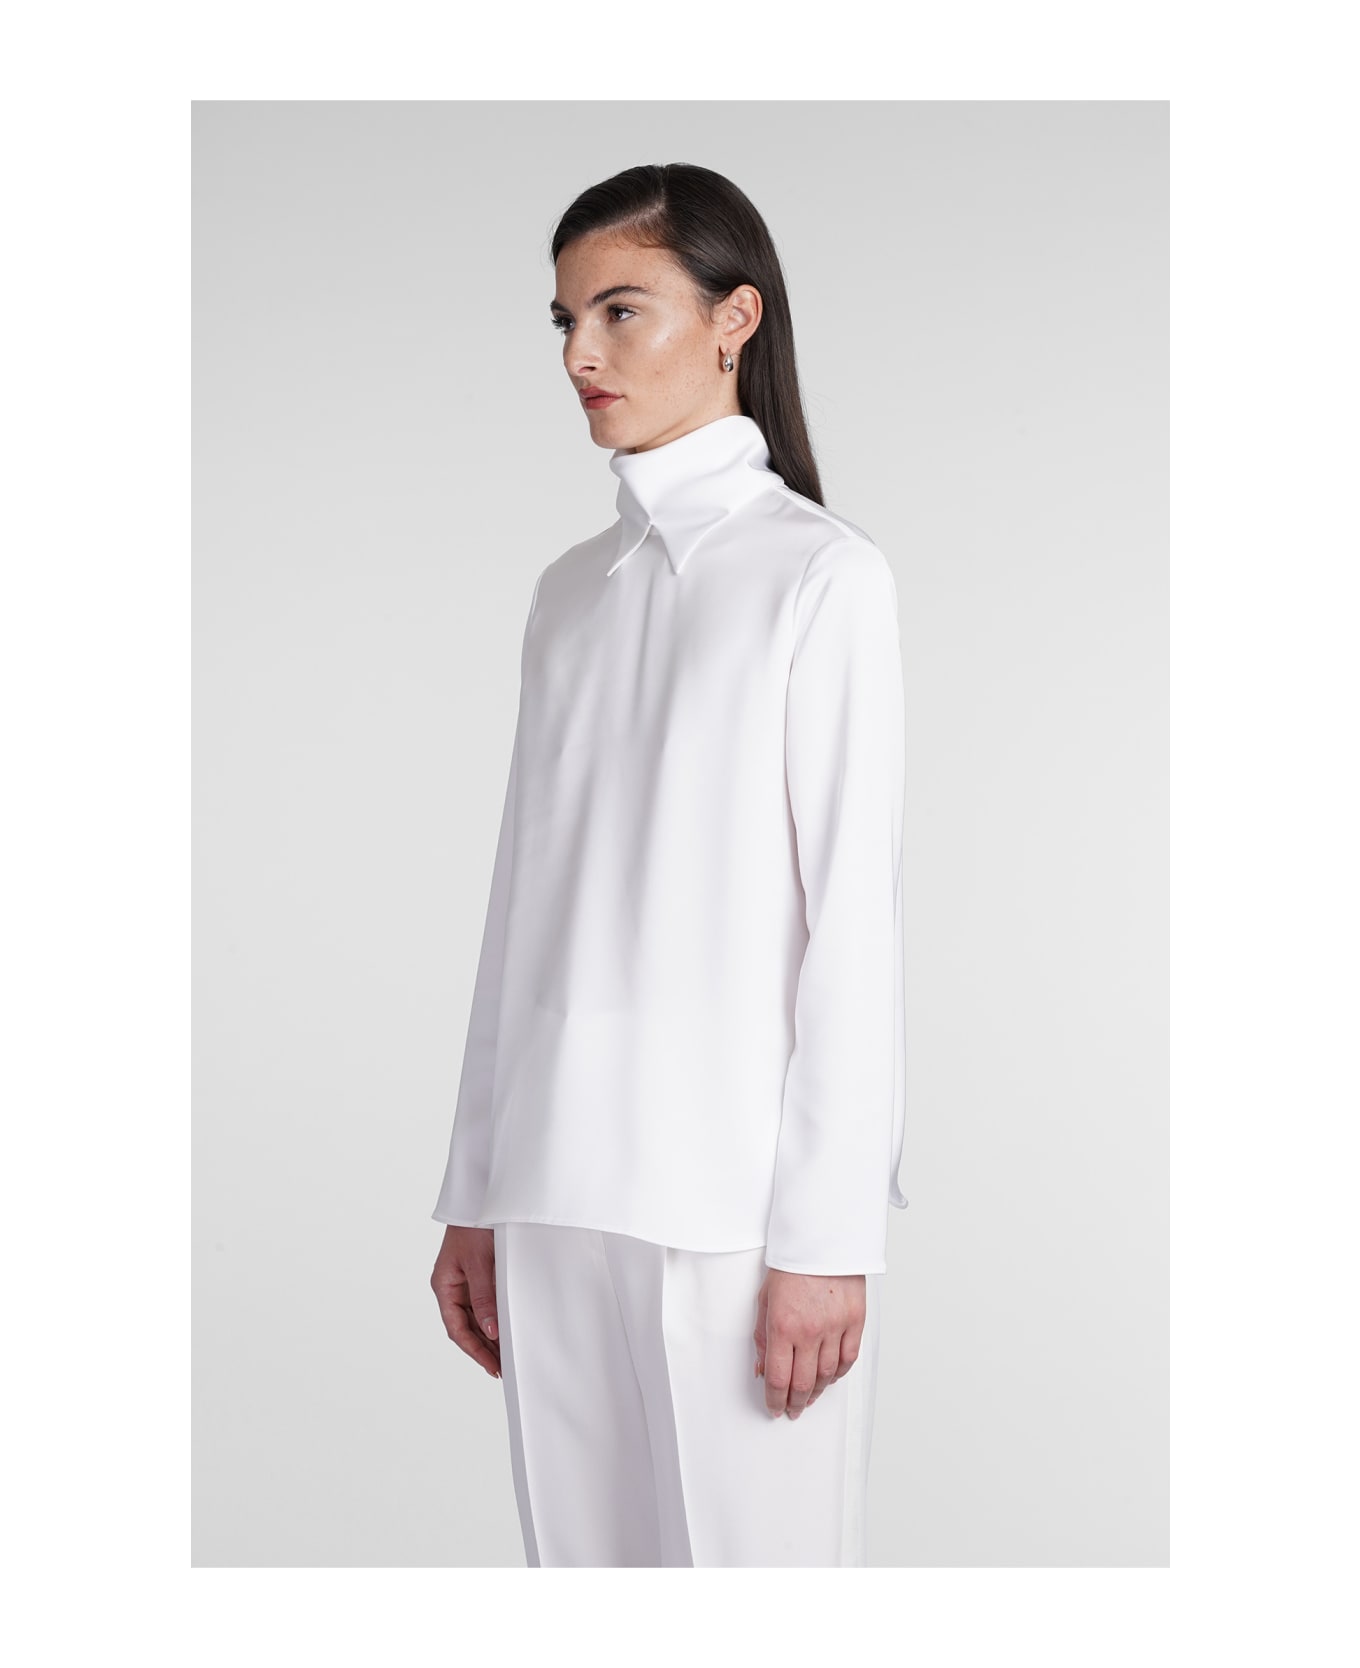 Emporio Armani Blouse In White Polyester Giorgio Armani - Silk White シャツ